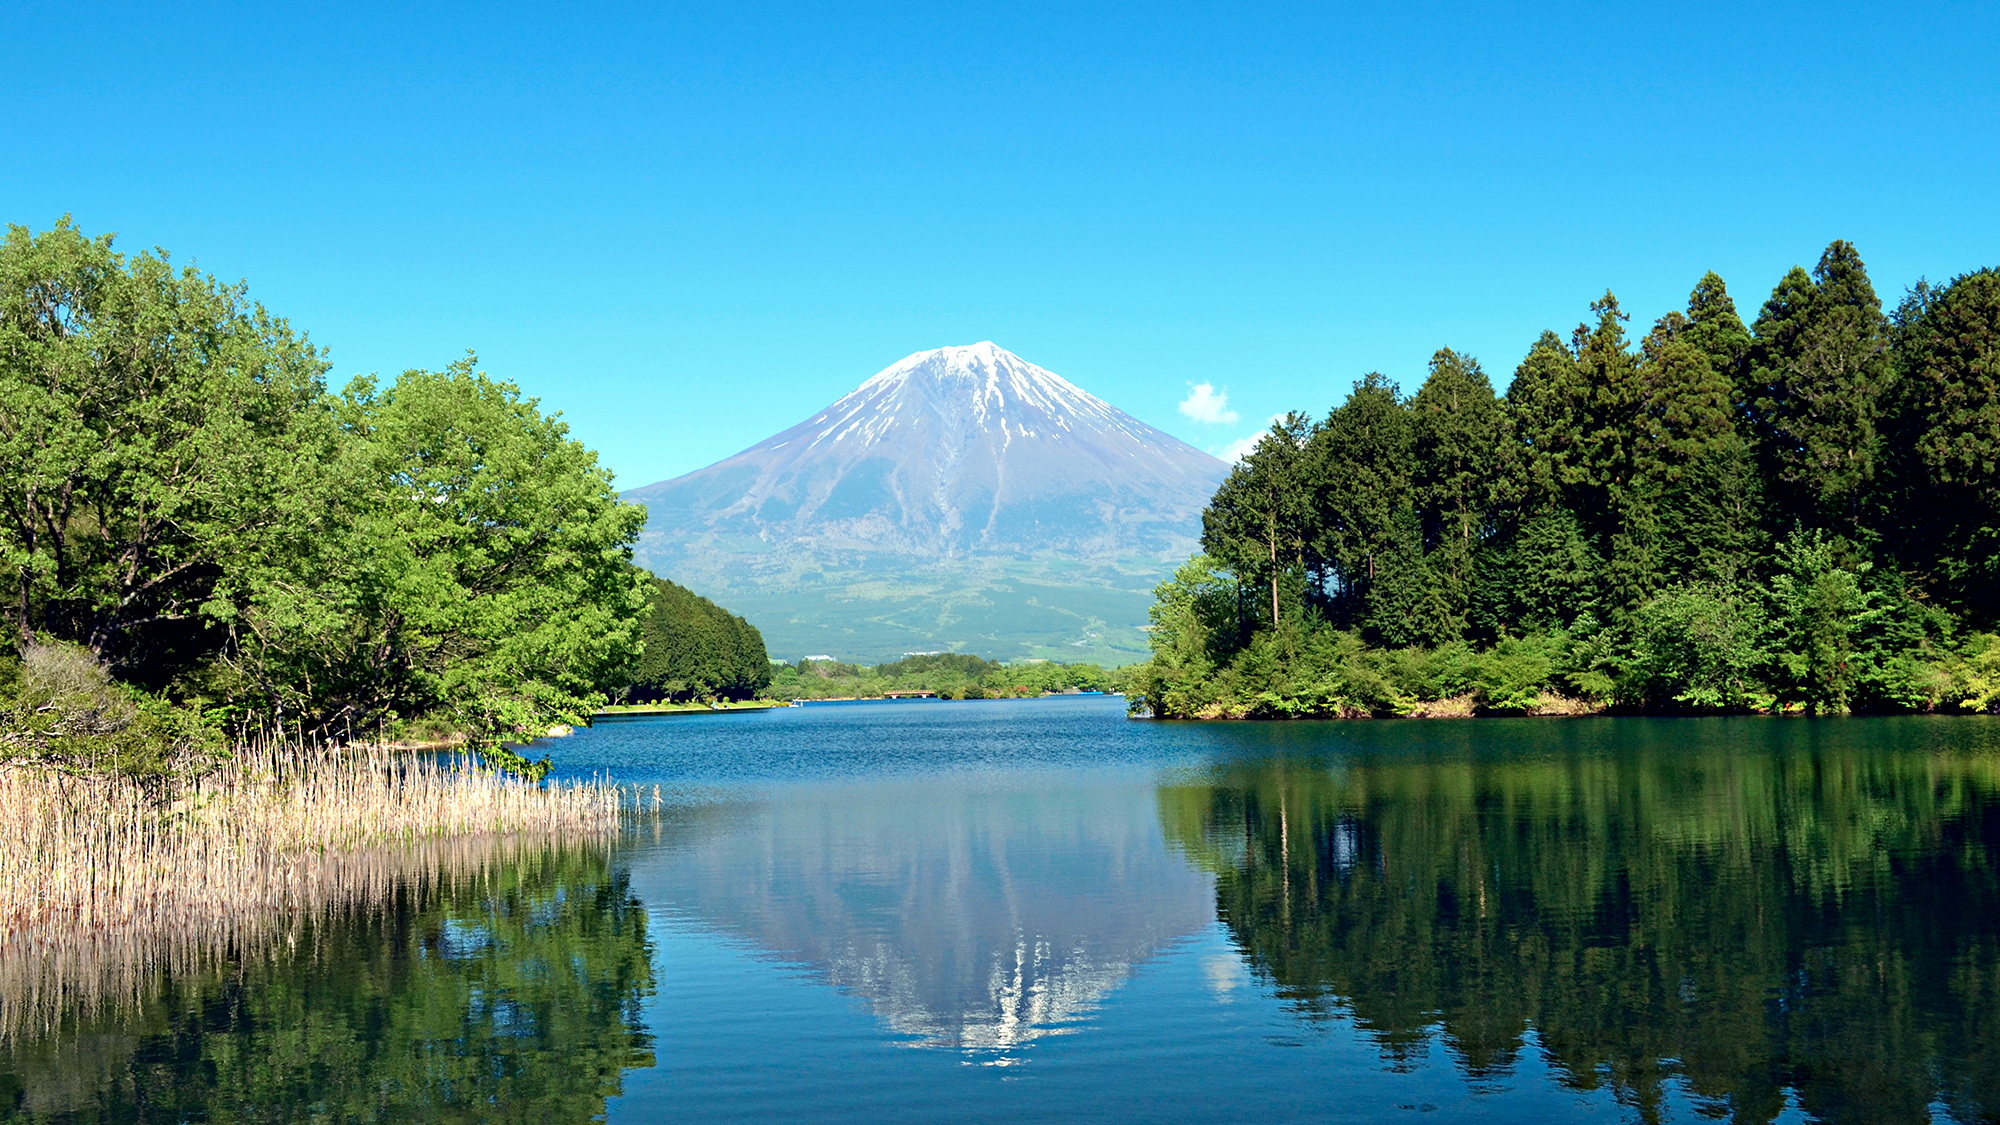 【イメージ】湖面に映る逆さ富士も魅力的です